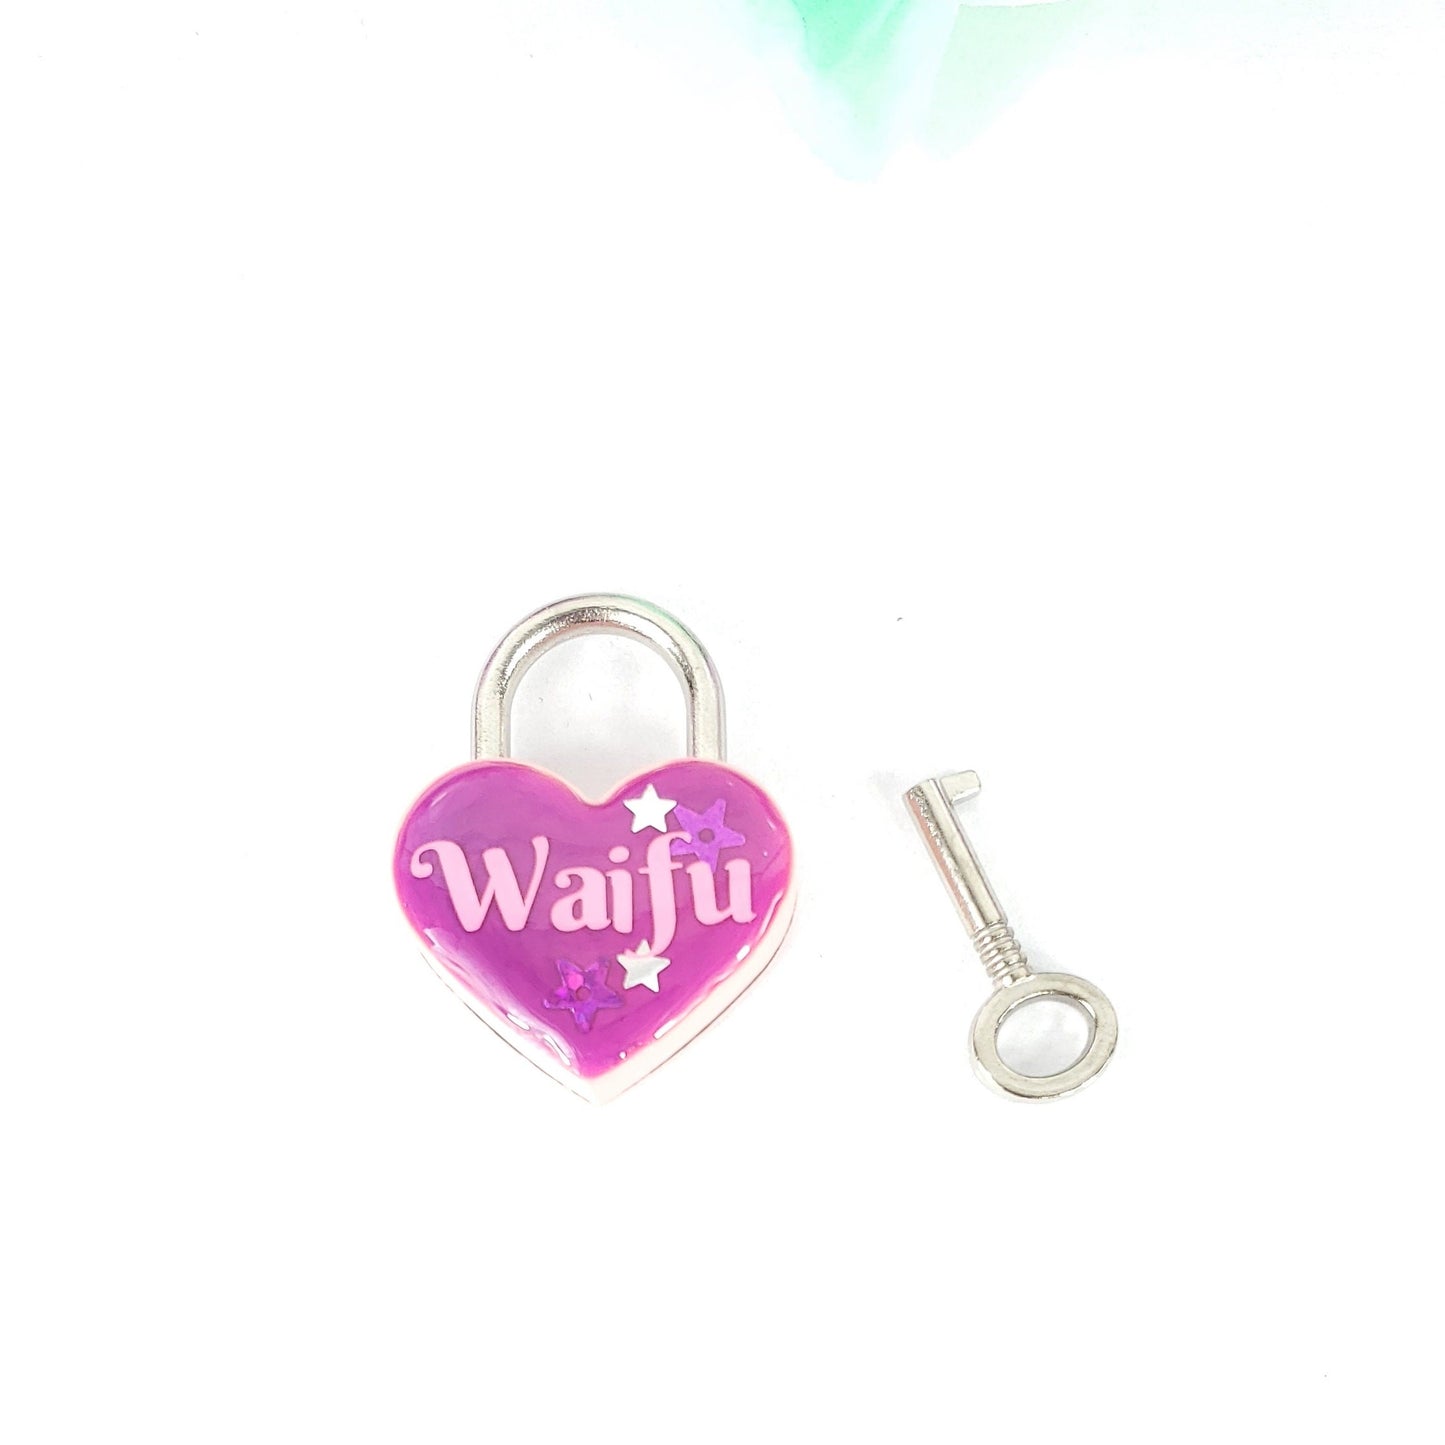 Waifu Heart Pad Lock